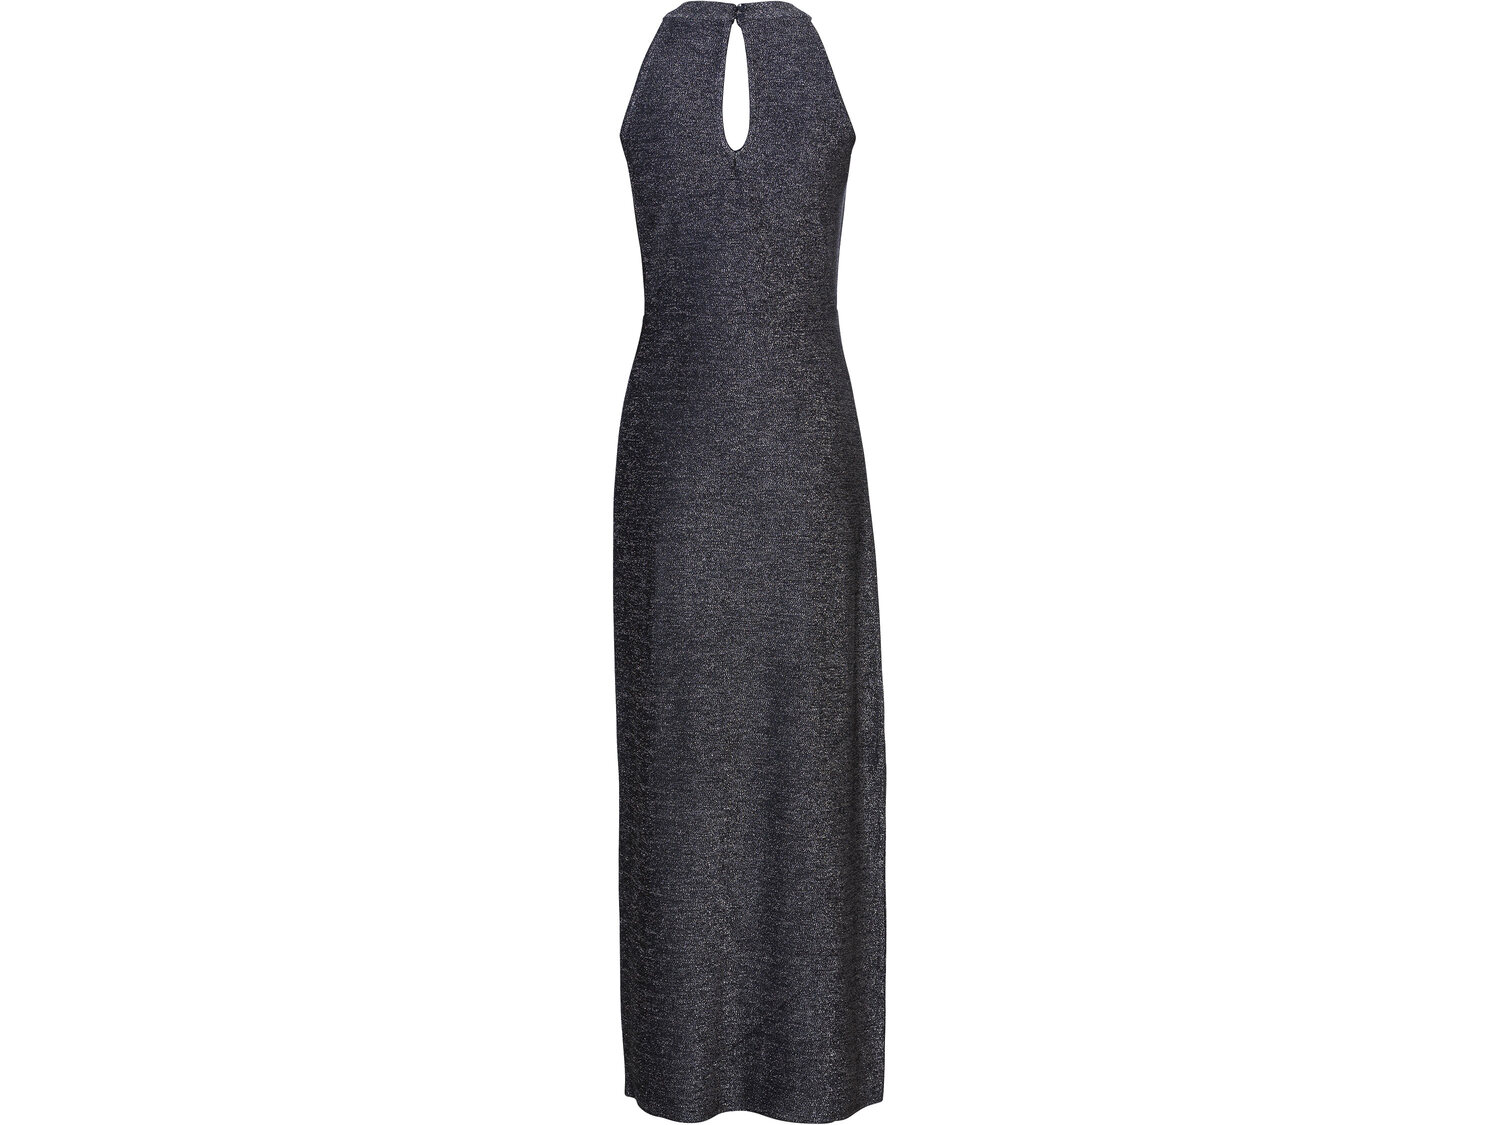 Sukienka z błyszczącej tkaniny Esmara, cena 49,99 PLN 
- rozmiary: S-L
Dostępne ...